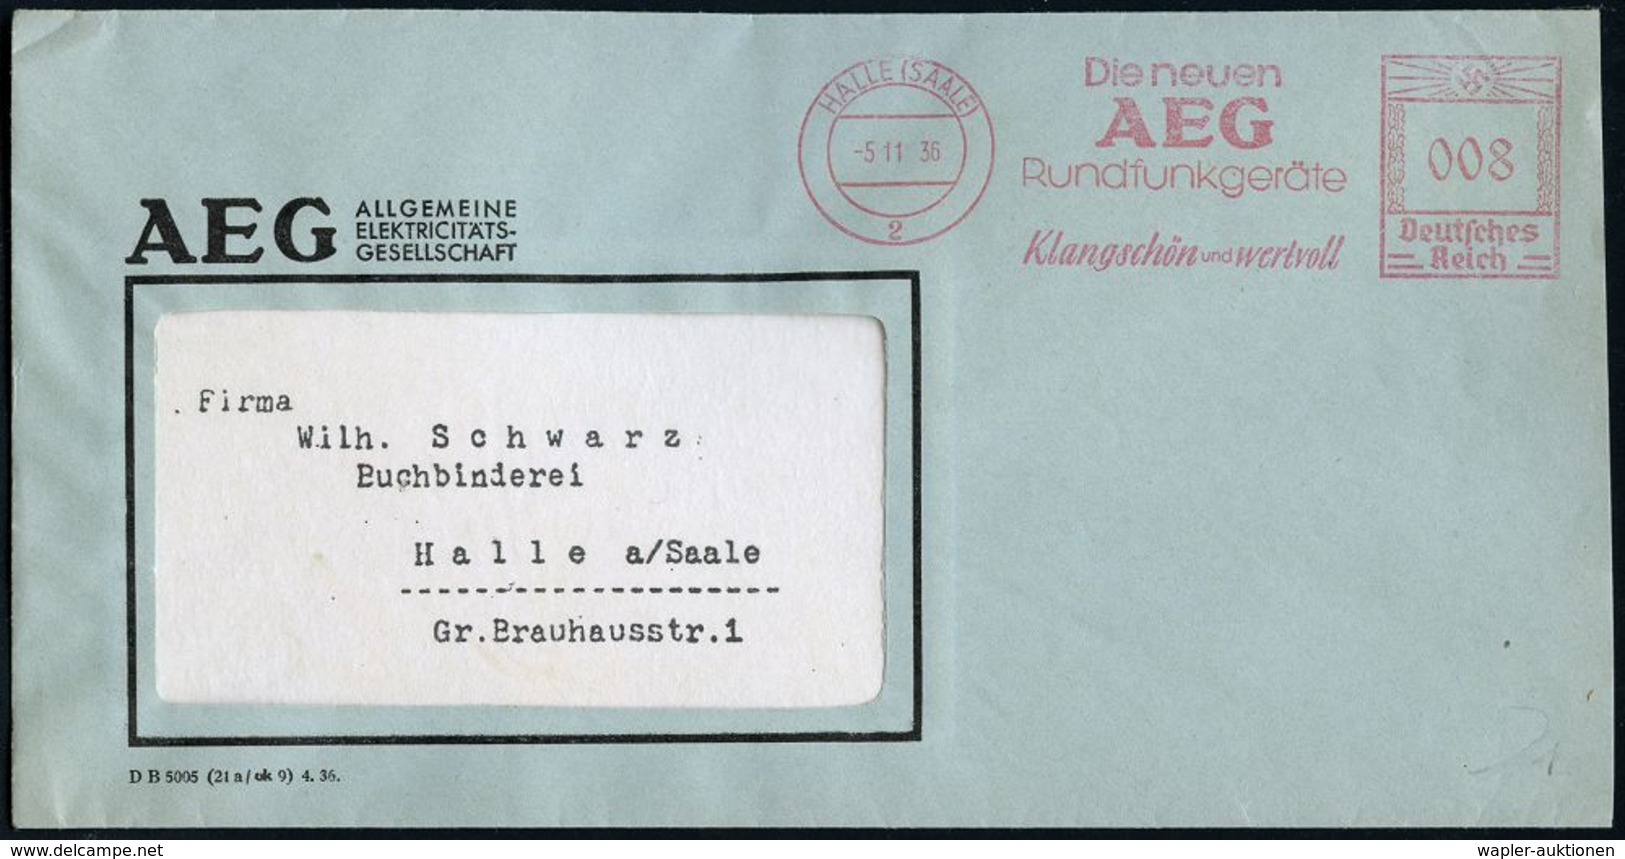 RADIO & RADIO-INDUSTRIE / APPARATE : HALLE (SAALE)/ 2/ Die Neuen/ AEG/ Rundfunkgeräte/ Klangschön U.wertvoll 1936 (5.11. - Non Classificati